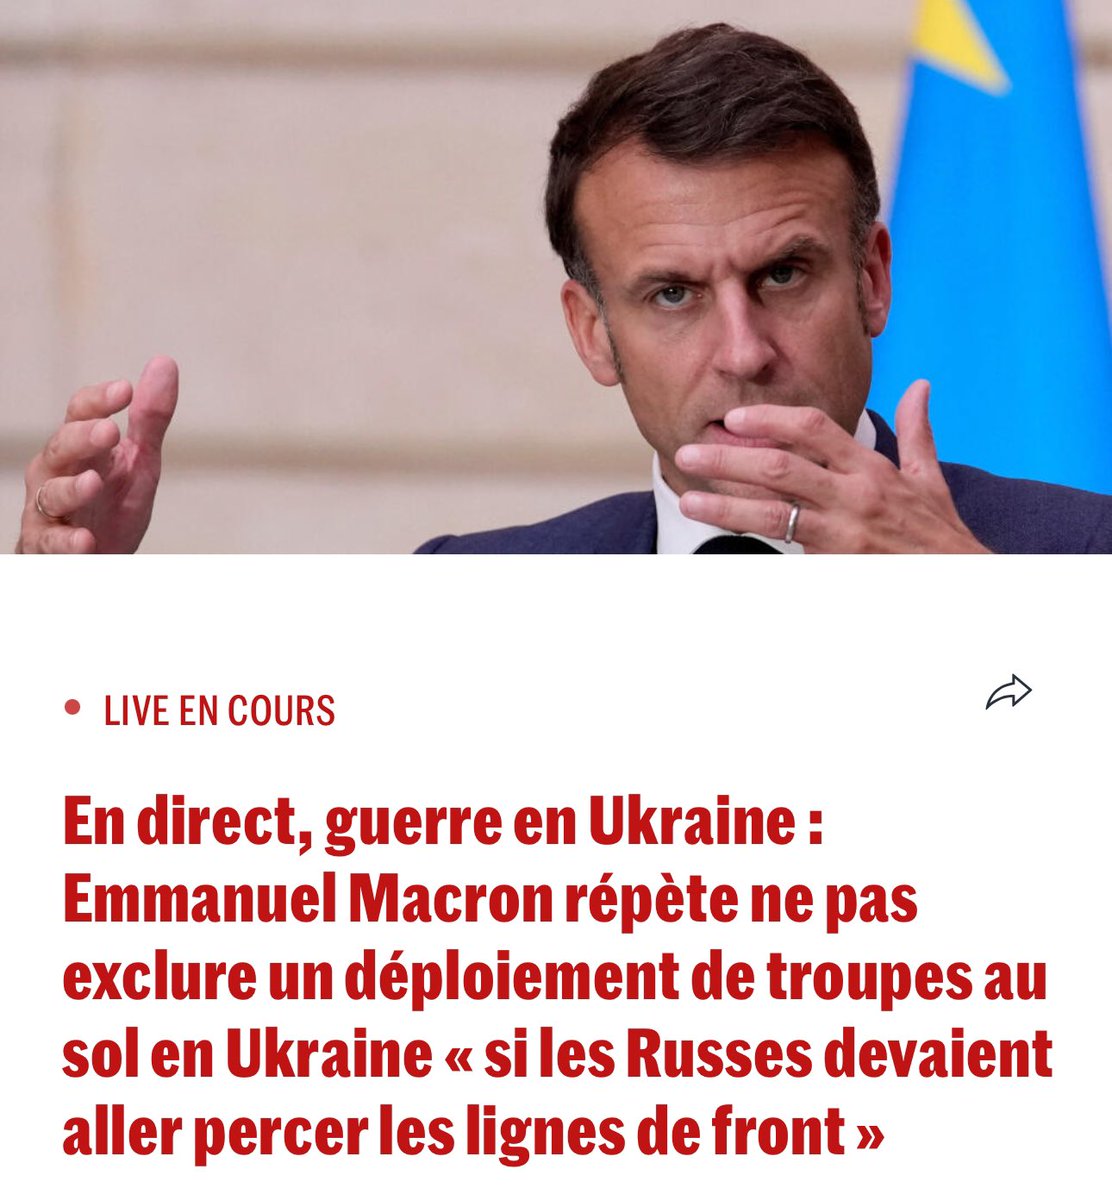 Emmanuel Macron, dans The Economist, persiste et signe dans sa folie : il veut envoyer nos enfants mourir en Ukraine pour un conflit qui n’est pas le nôtre et qui surtout pourrait s’arrêter du jour au lendemain si les dirigeants occidentaux le décidaient. Retrouvez mon plan de